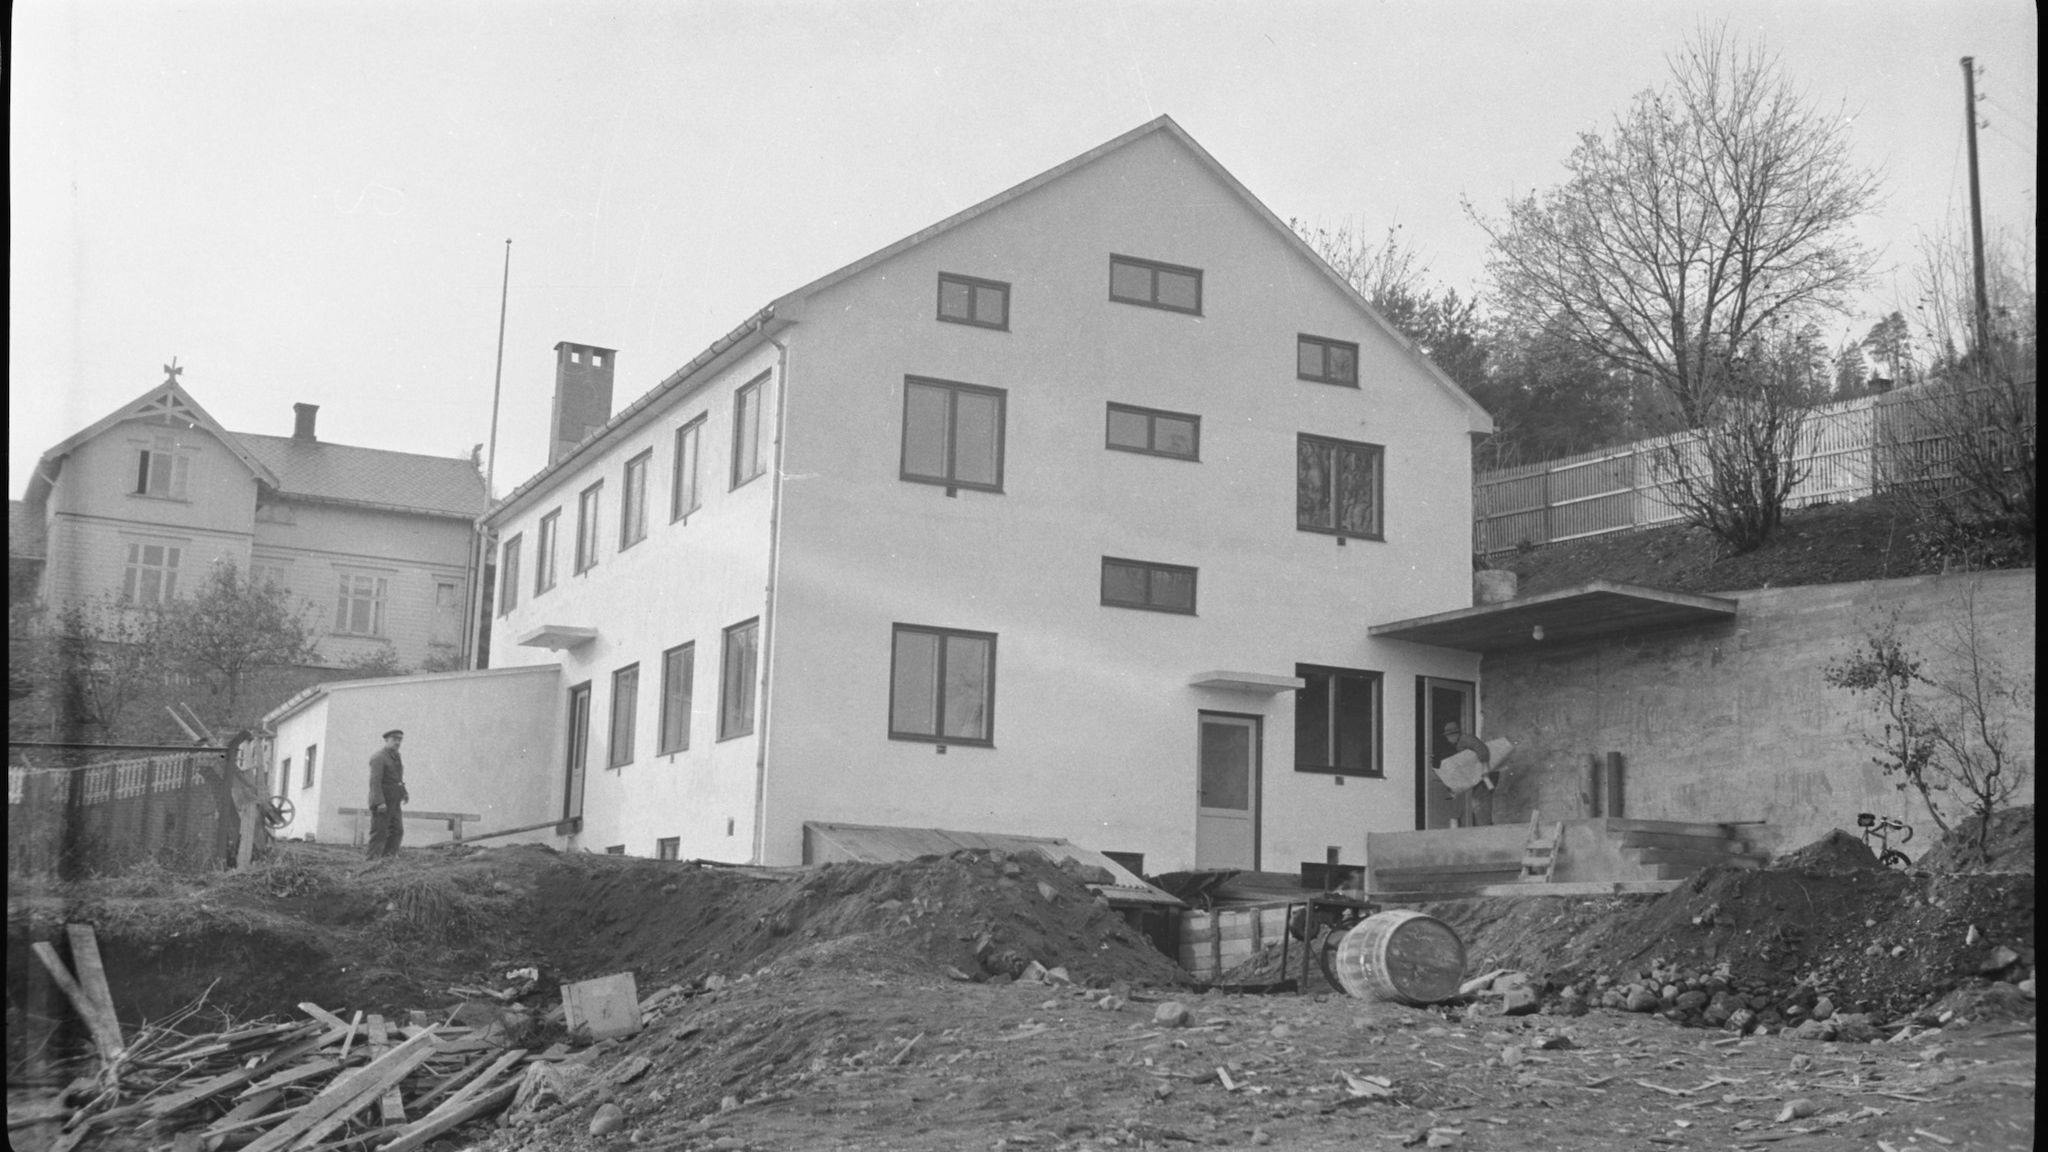 Fruktforedlingen AS, Skolebakken 2, Gjøvik. Ferdigstilt sommeren 1935. Byggeleder og fotograf Olaf Syljuåsen